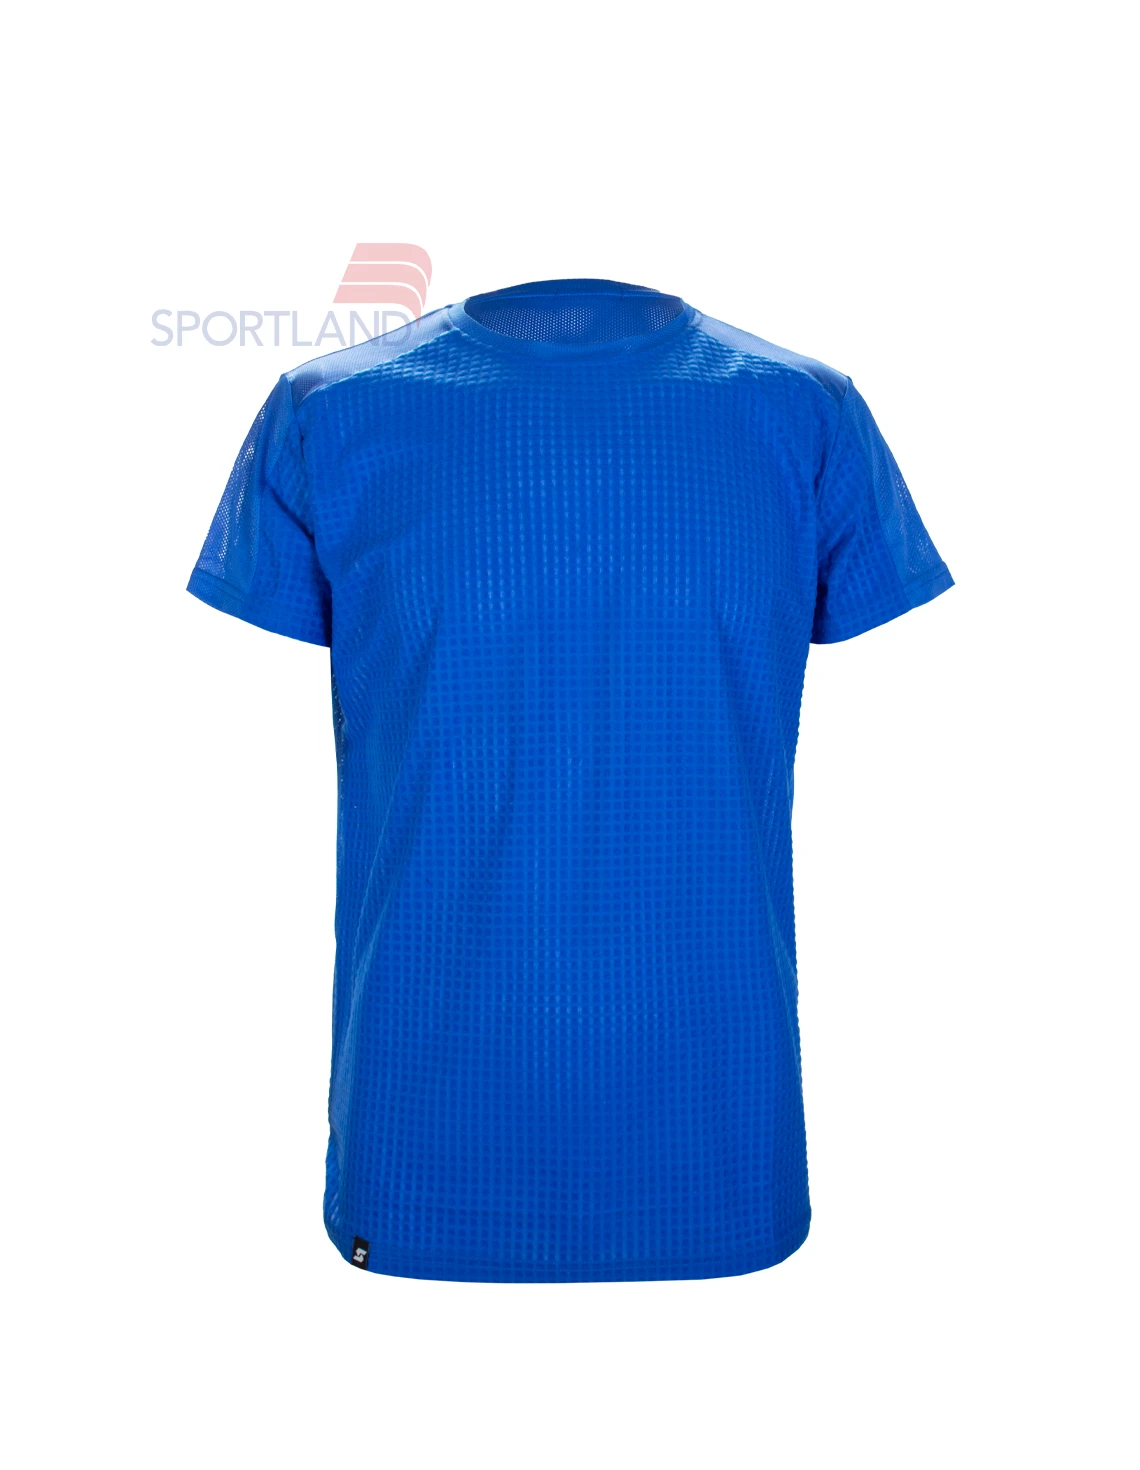 تی شرت ورزشی مردانه اسپورتلند Nico M